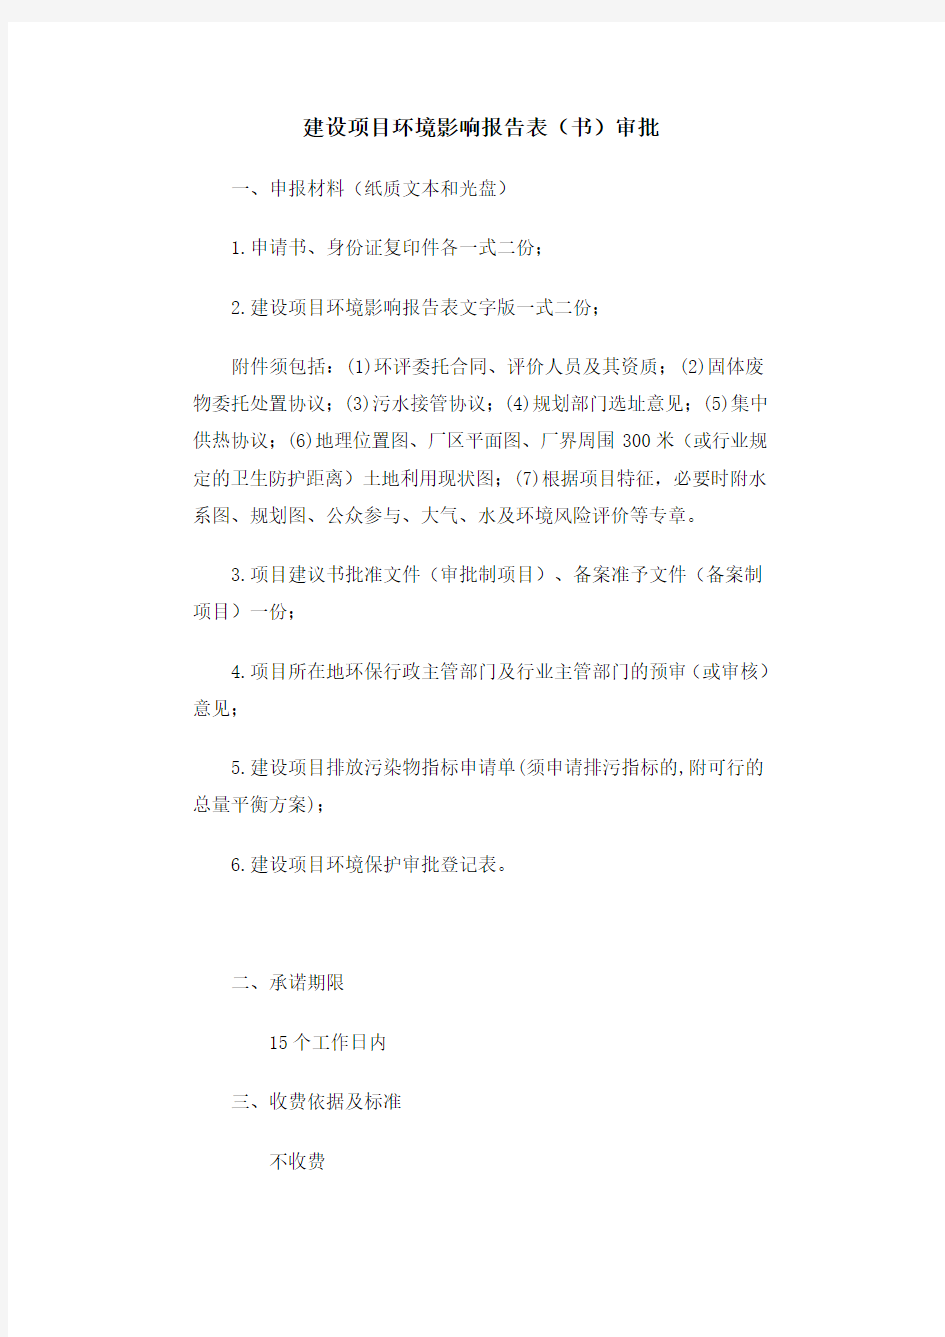 江苏南通如东县建设项目环境影响报告表(环评报告)